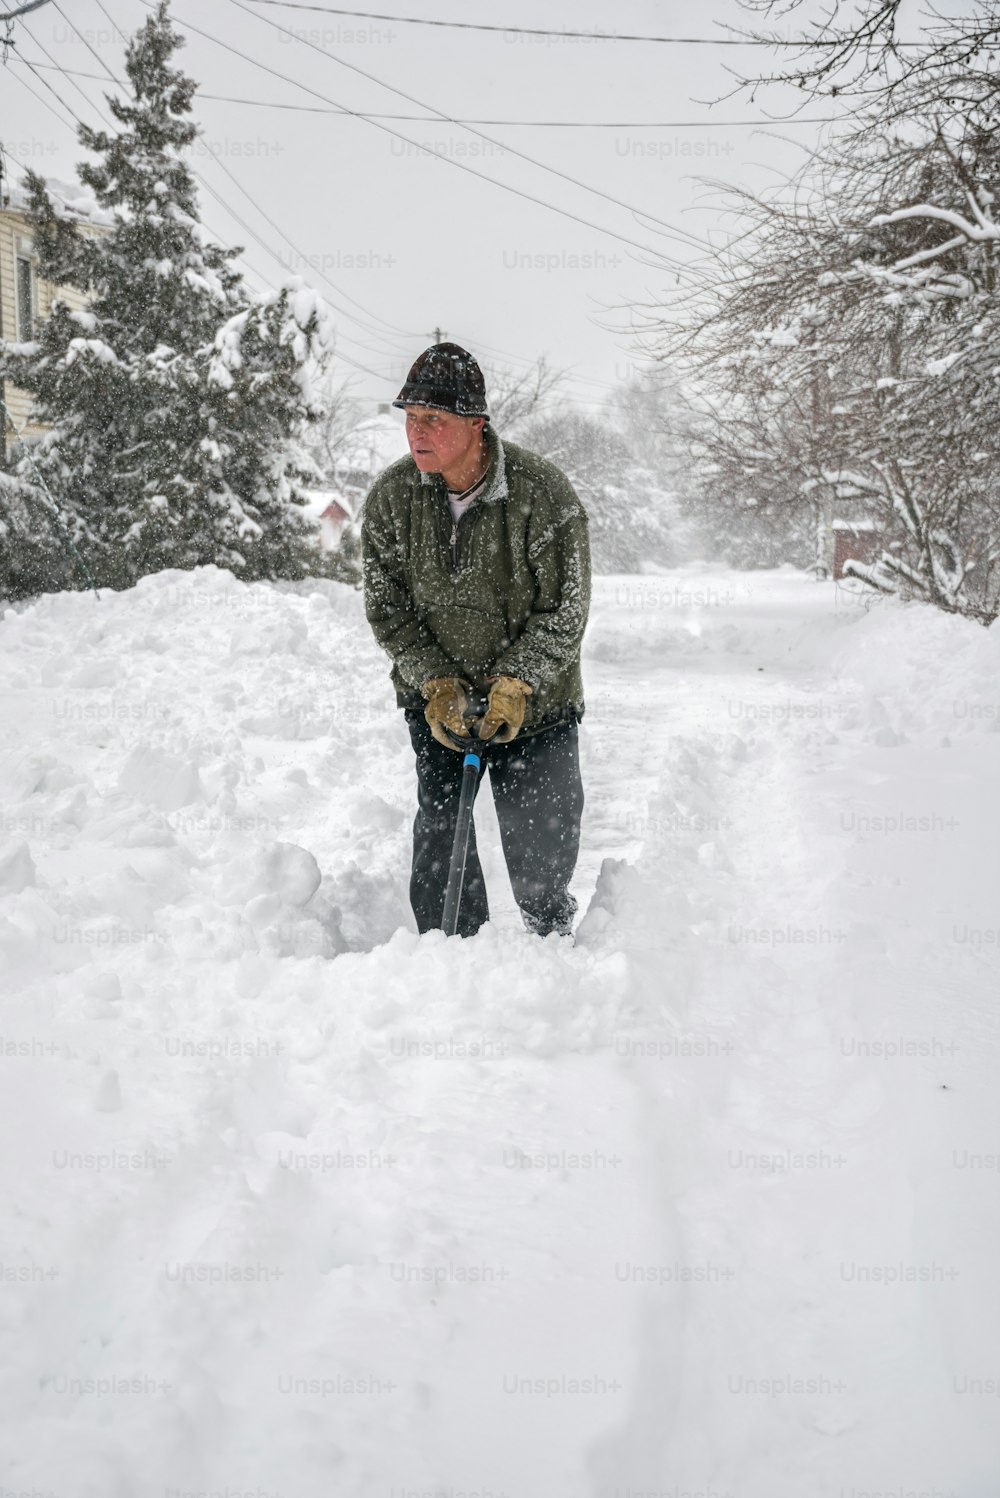 大雪が降った後、シャベルを手にした老人が道路を片付ける。季節労働の男性